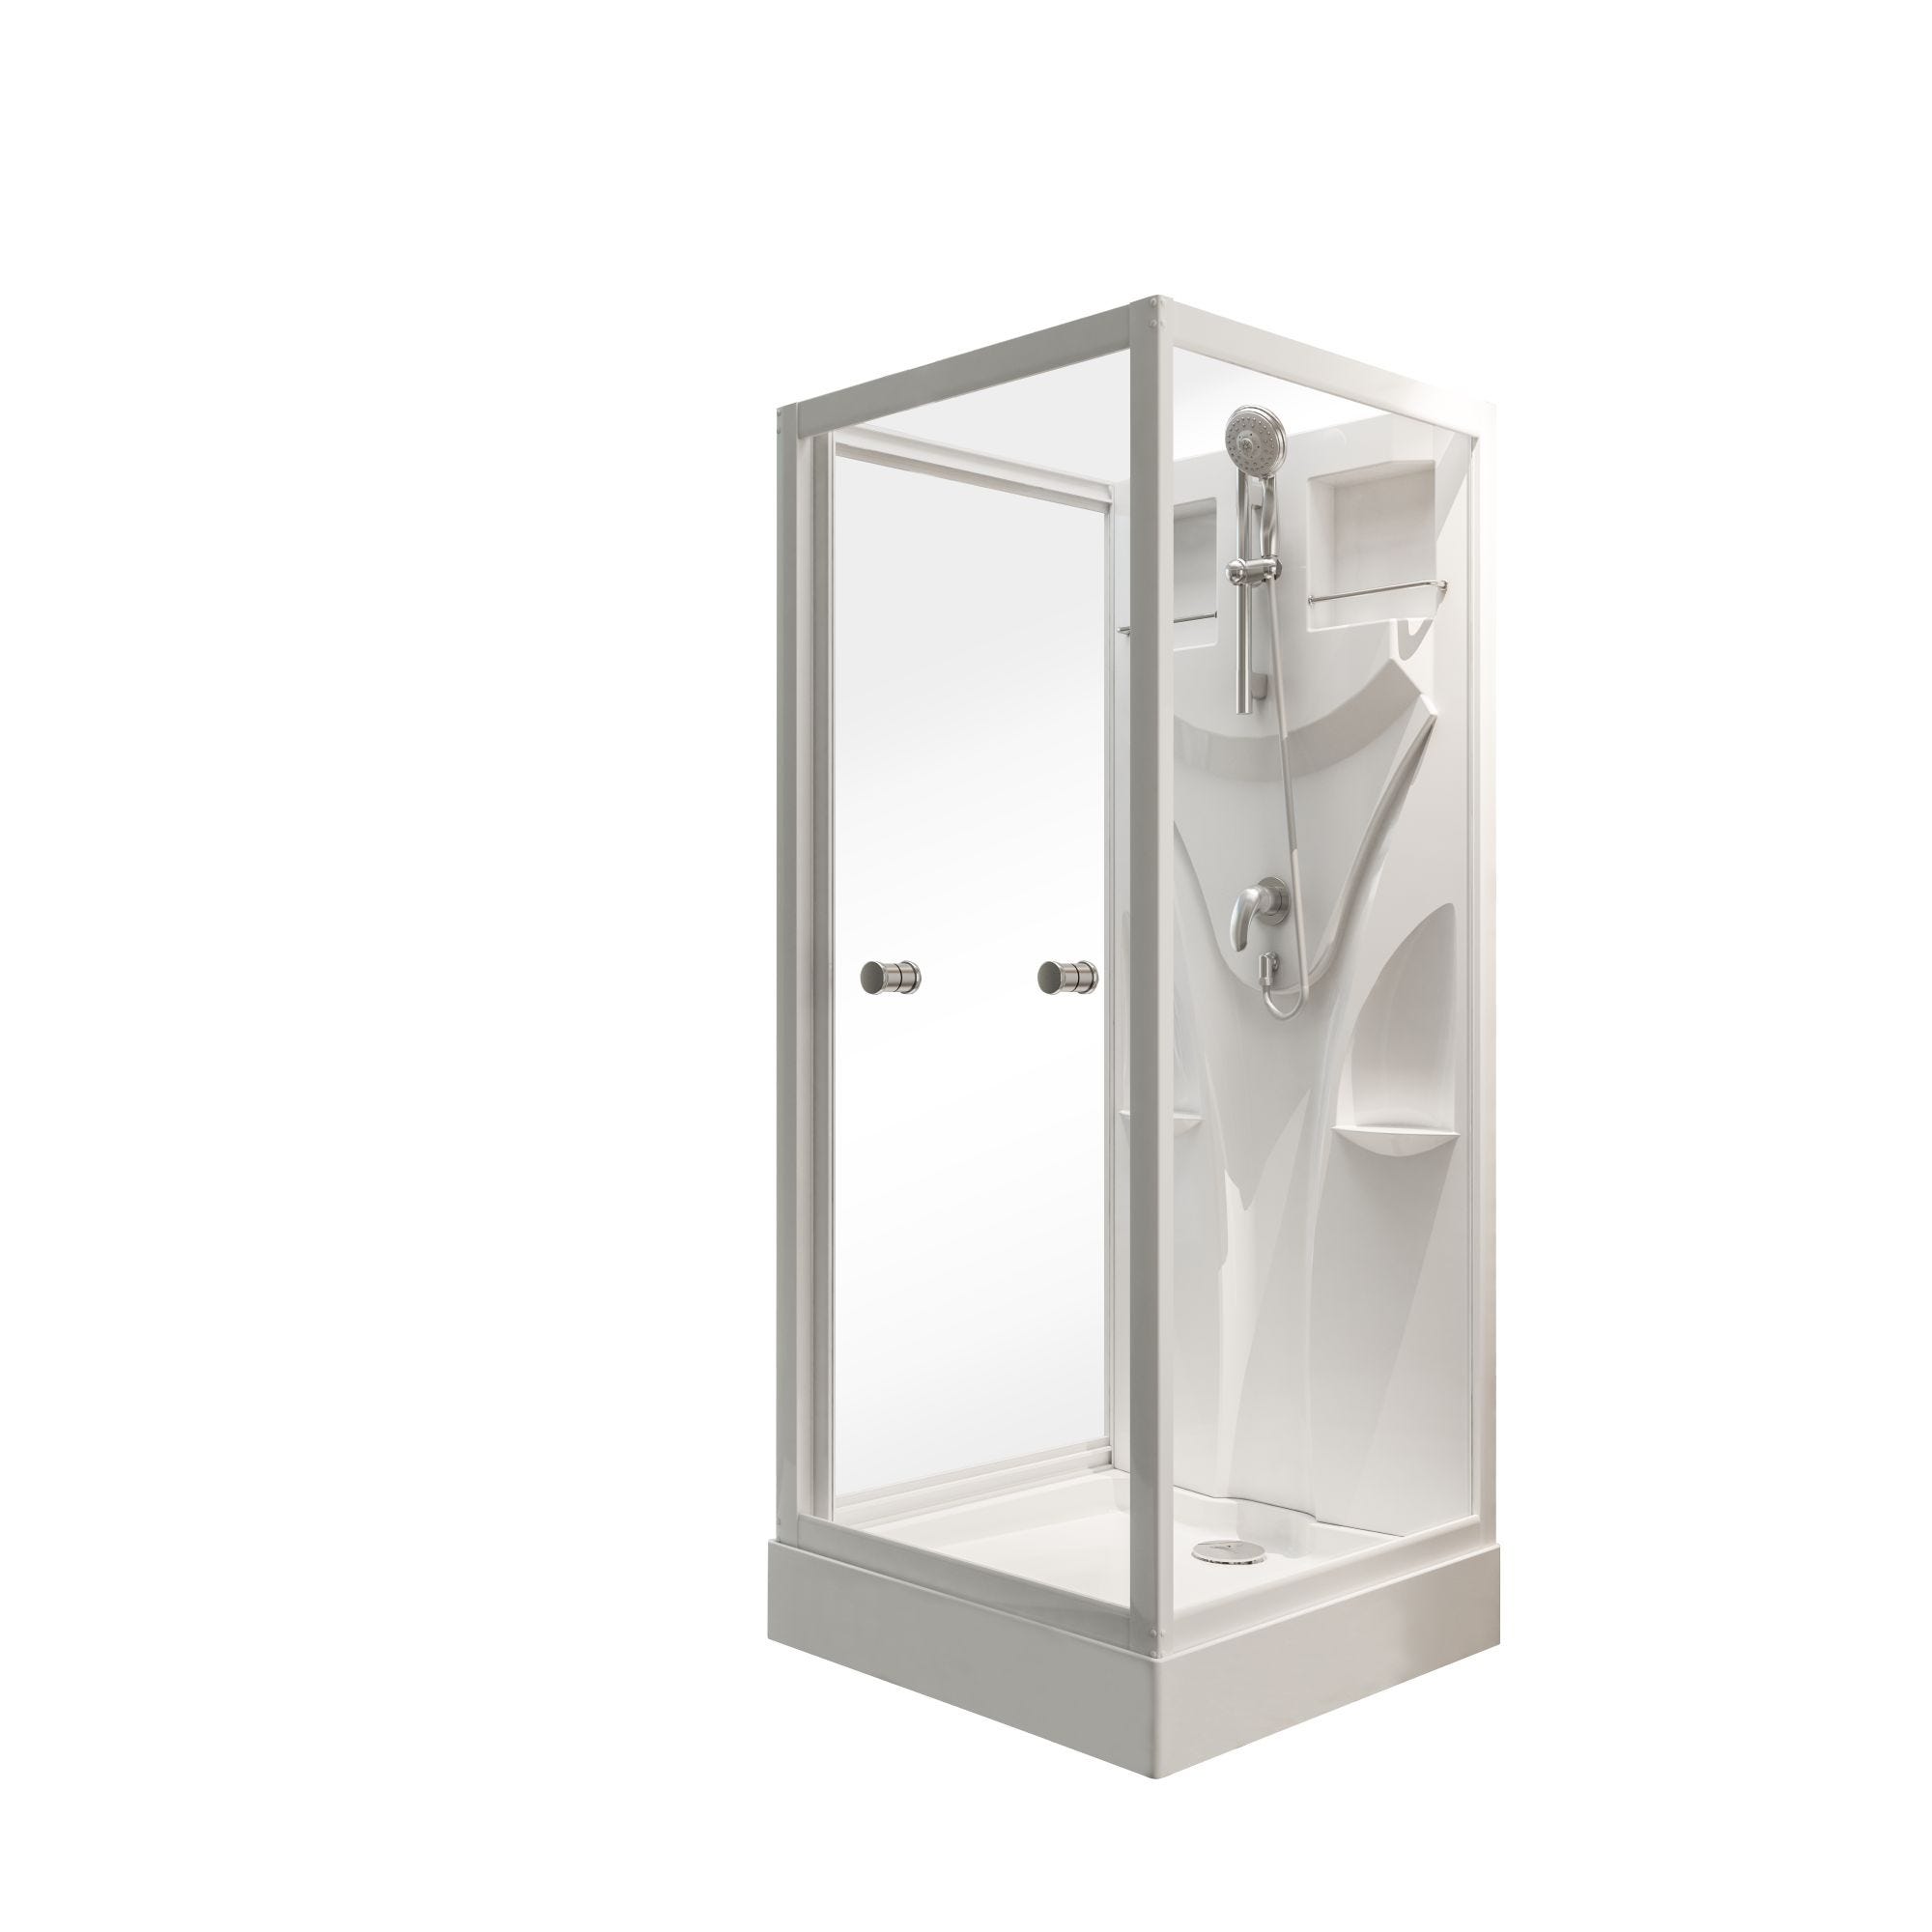 Schulte cabine de douche intégrale, 80 x 80 x 190 cm, verre de sécurité 5 mm, cabine de douche complète, blanc alpin, Juist 1